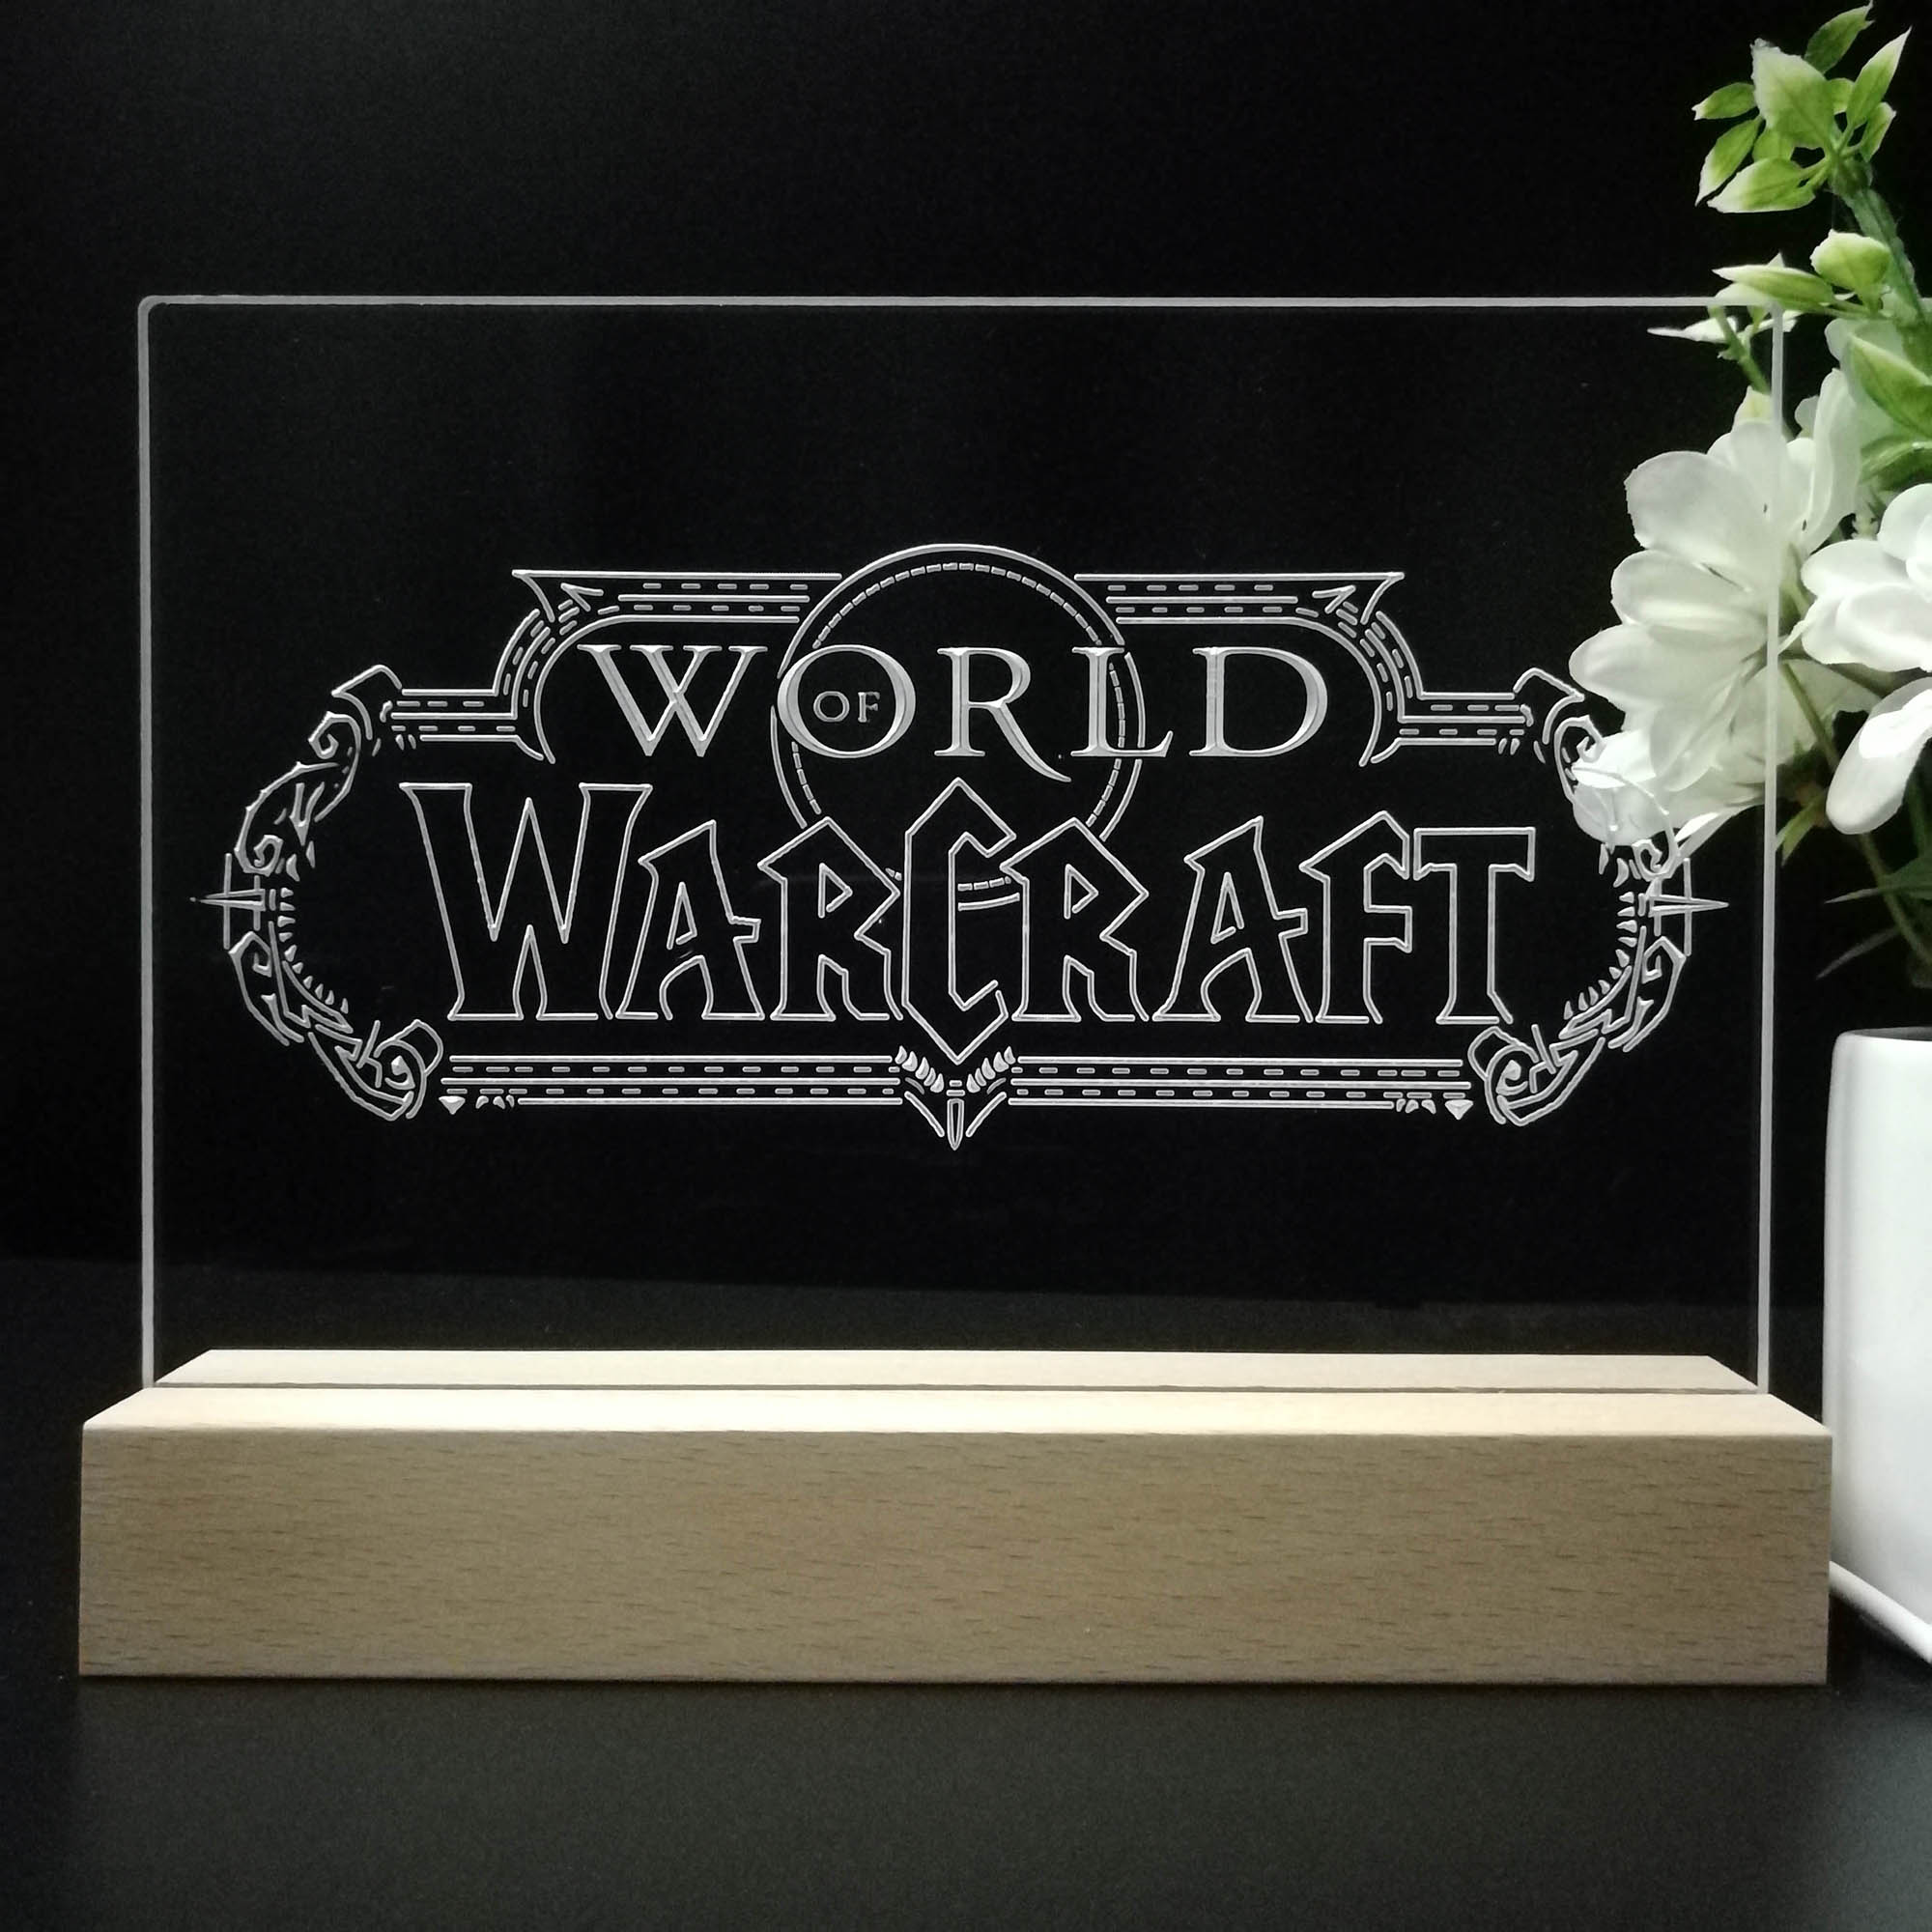 World of Warcraft 3D LED Optical Illusion Sleep Night Light